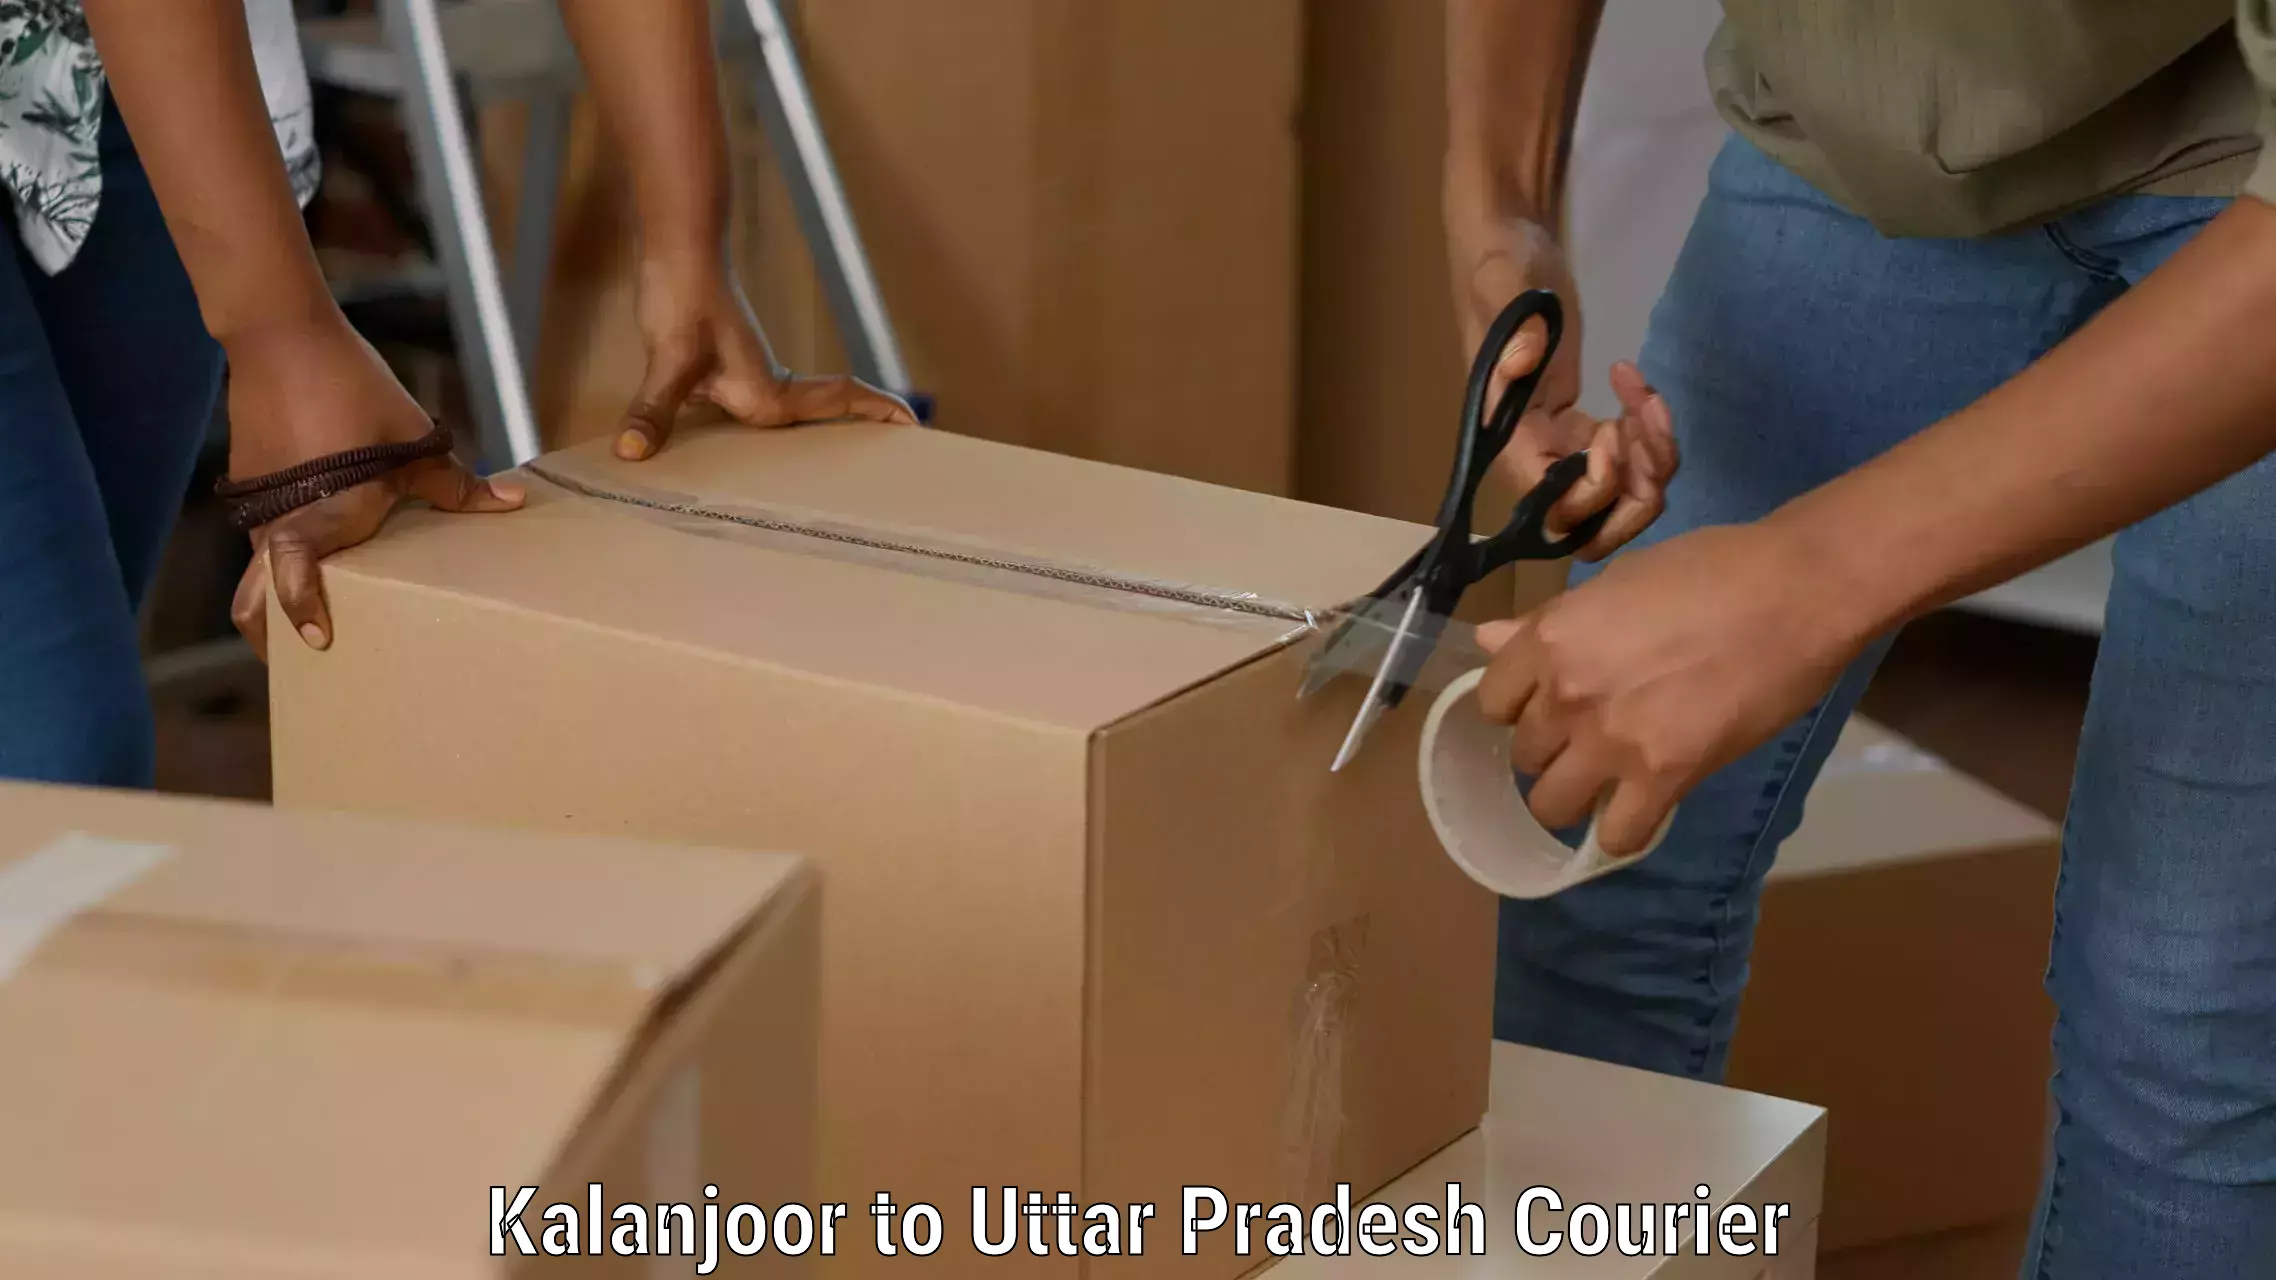 Efficient parcel service Kalanjoor to Afzalgarh